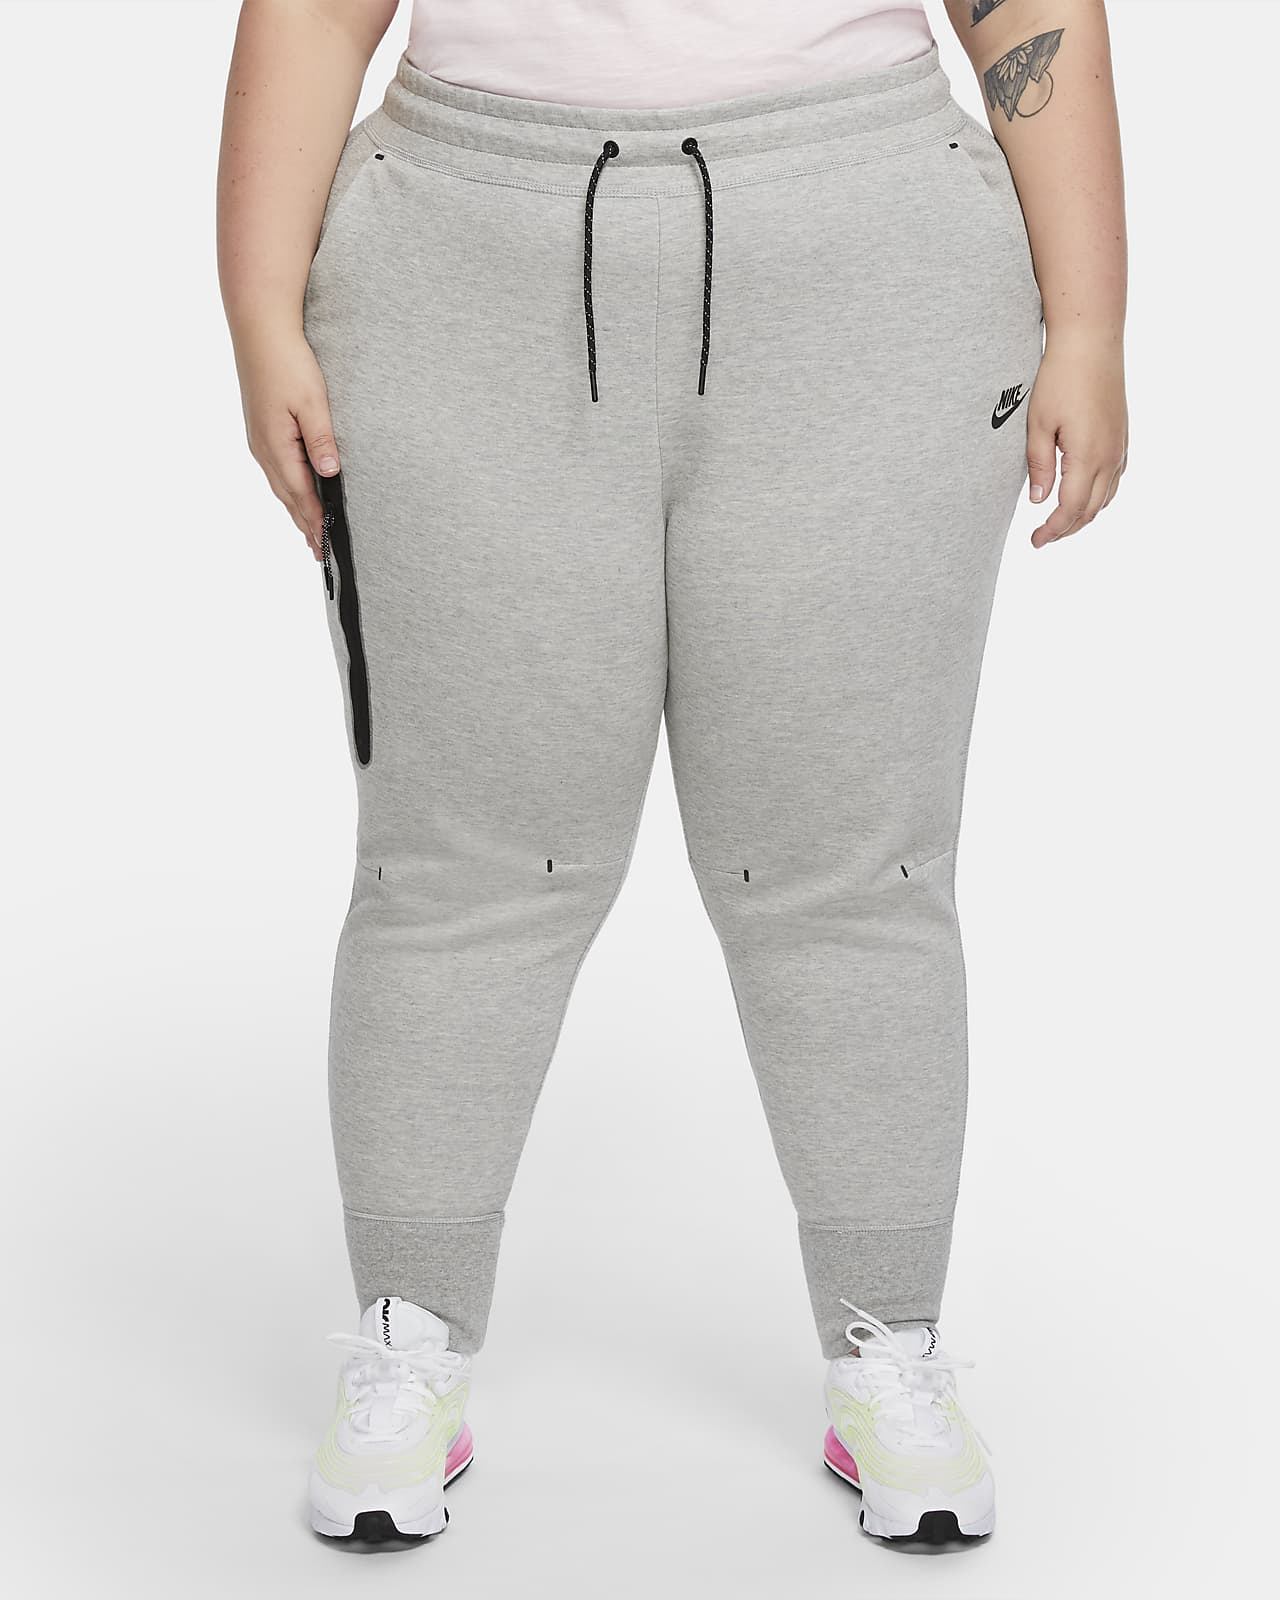 bid Knoglemarv søn Nike Sportswear Tech Fleece-bukser til kvinder (Plus Size). Nike DK